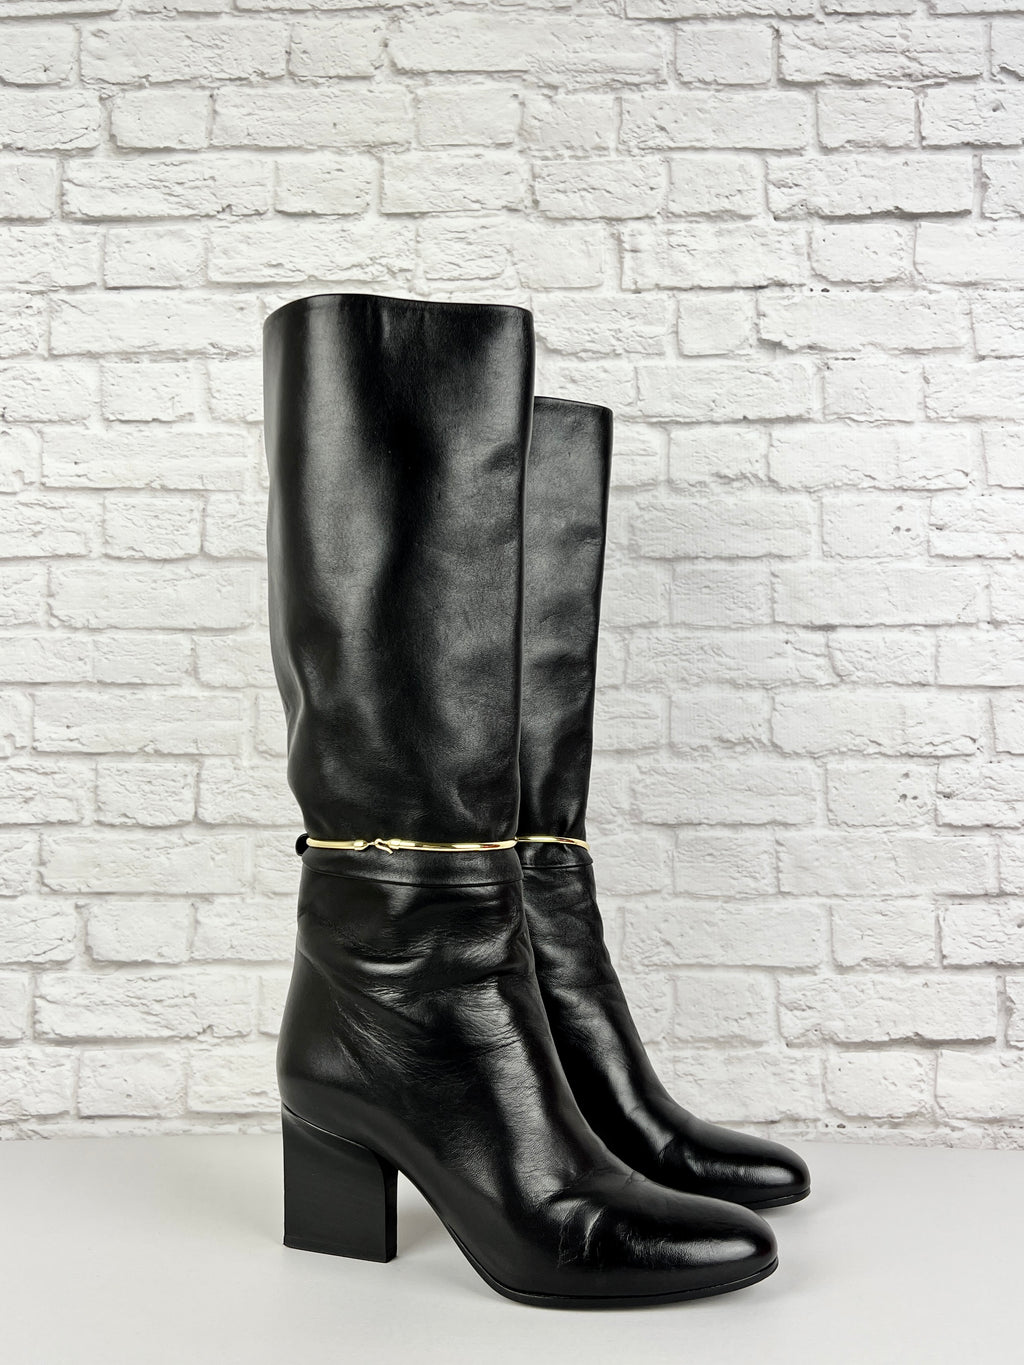 JIL SANDER   Black Leather Knee Boots, Size 38/US 8, Black